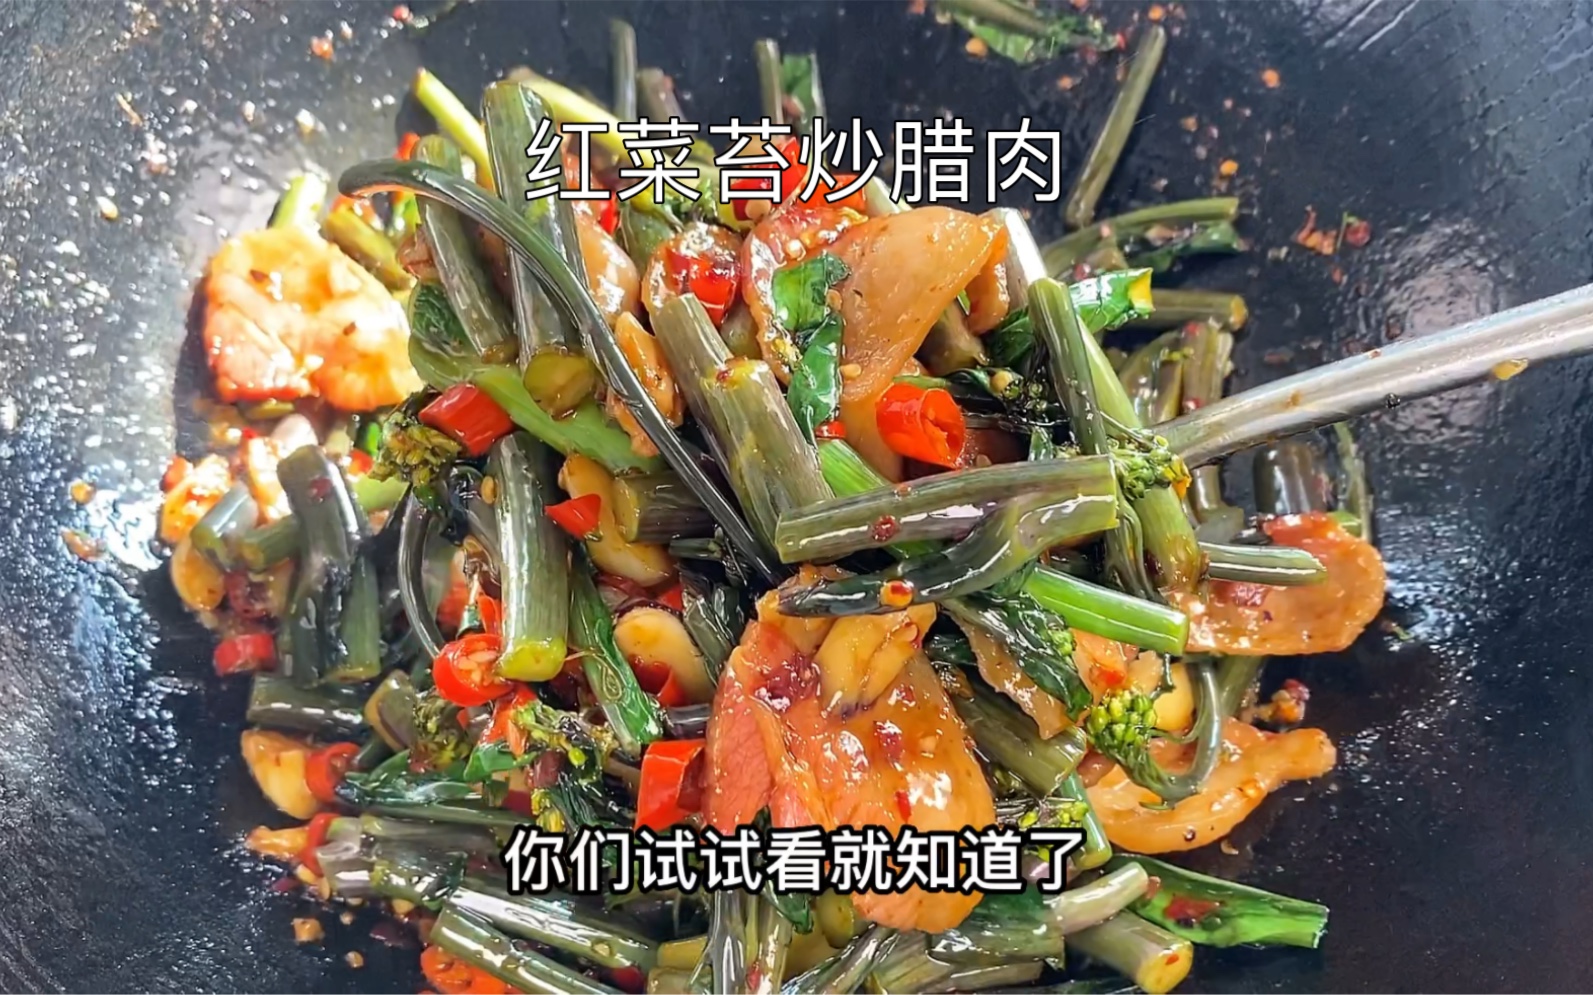 蒜蓉炒红菜苔,蒜蓉炒红菜苔的家常做法 - 美食杰蒜蓉炒红菜苔做法大全